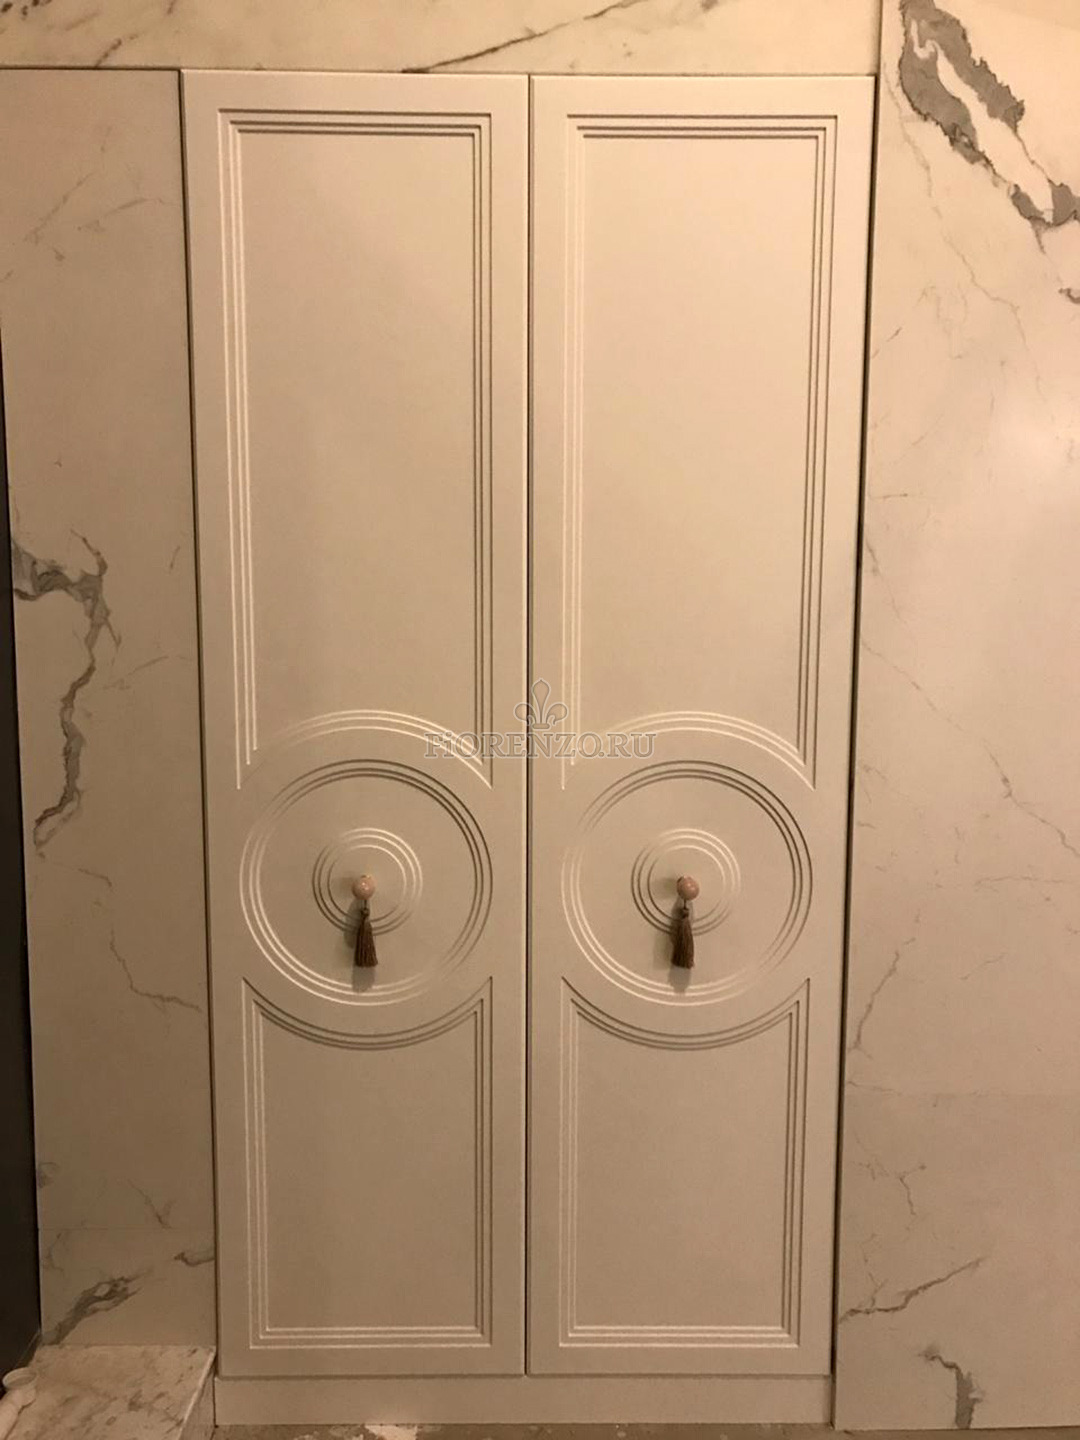 Шкаф с распашными дверьми